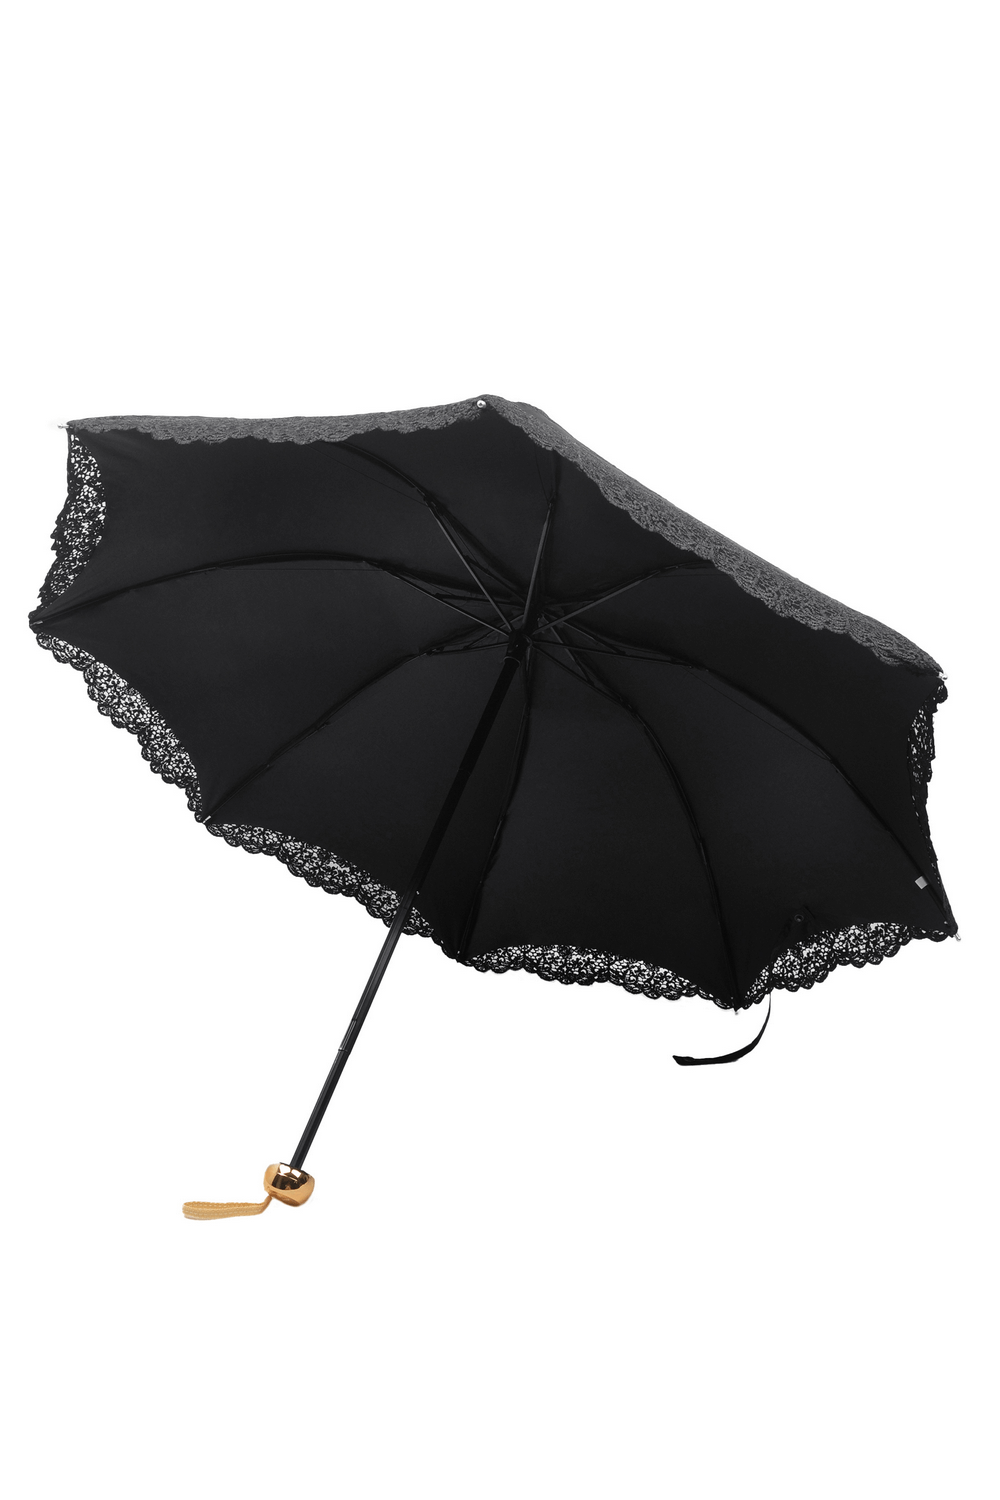 Paraguas gótico vintage con ribete de encaje y mango de madera